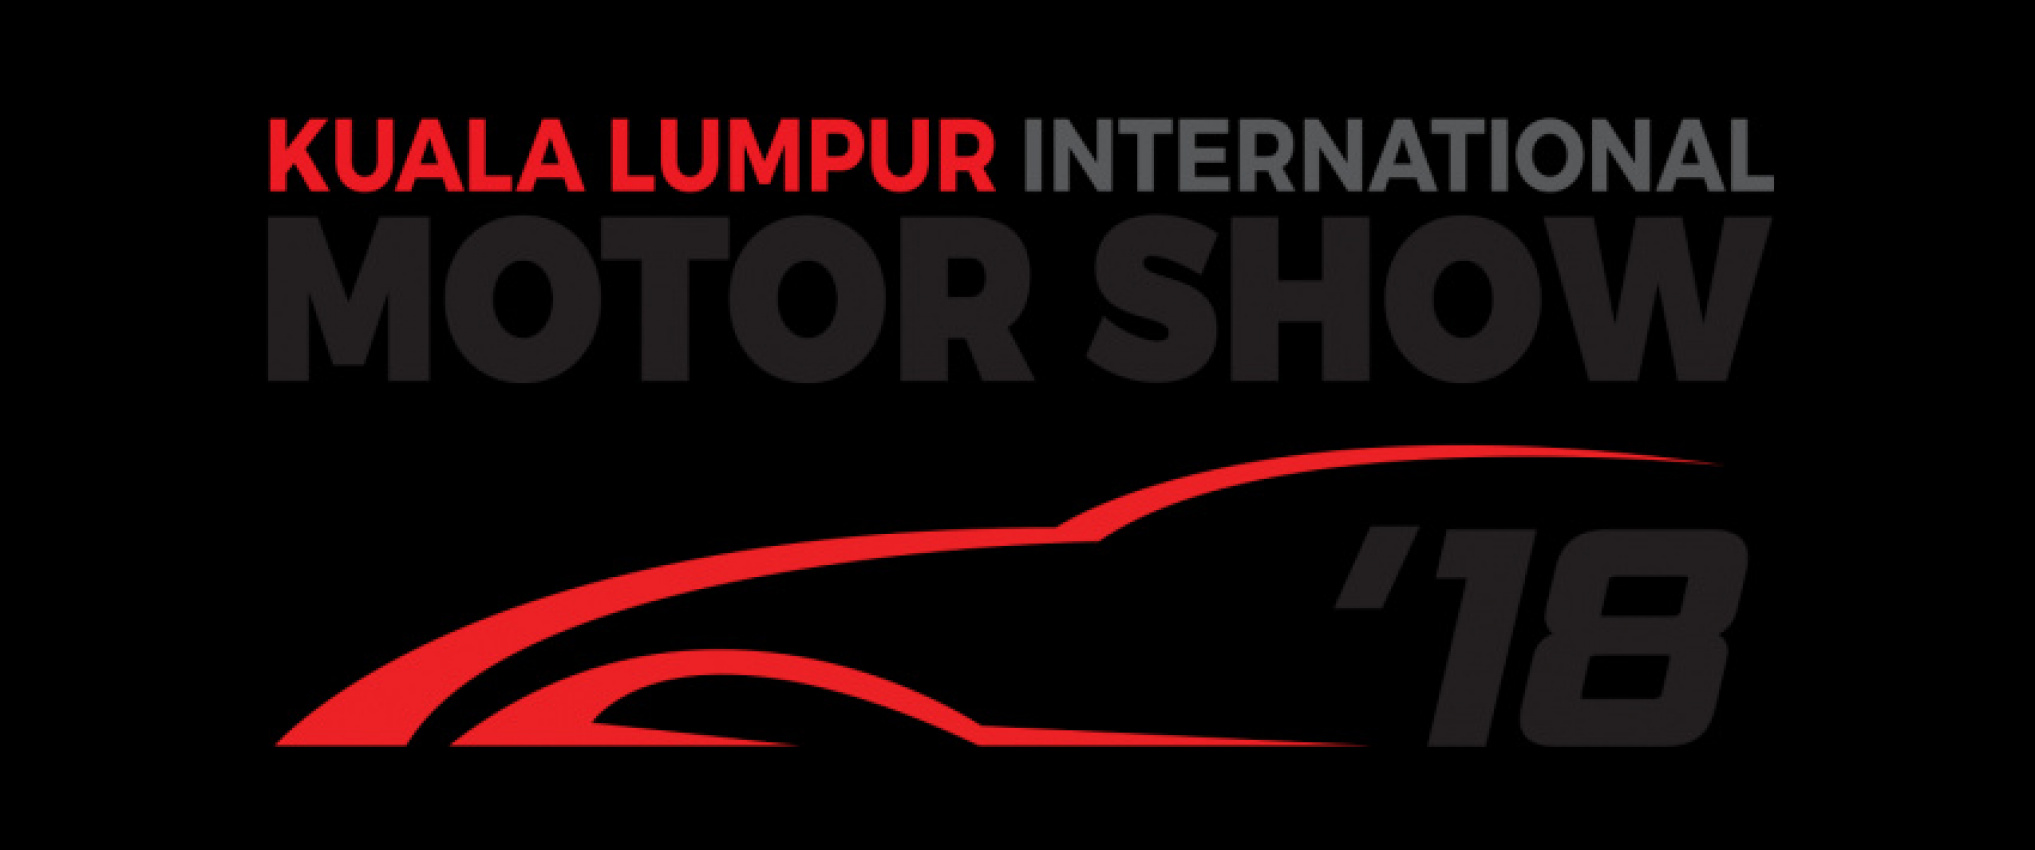 autos, cars, kl international motorshow 2018, klims 2018, klims mitec, motorshow, motorshows, klims is back – the kl international motorshow 2018 starts on 23rd nov @ mitec! [+links]